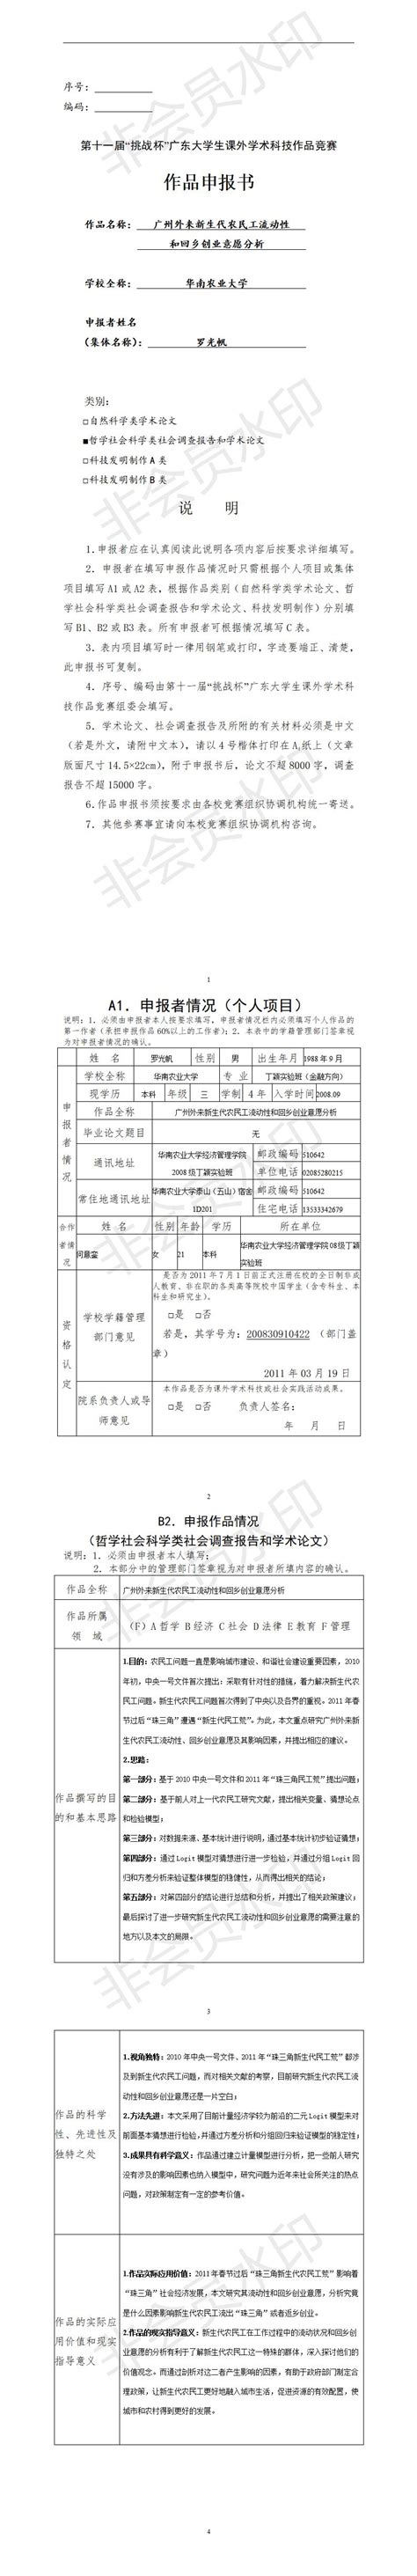 广州制造业单项冠军申报流程 广州市制造业单项冠军奖励 - 知乎